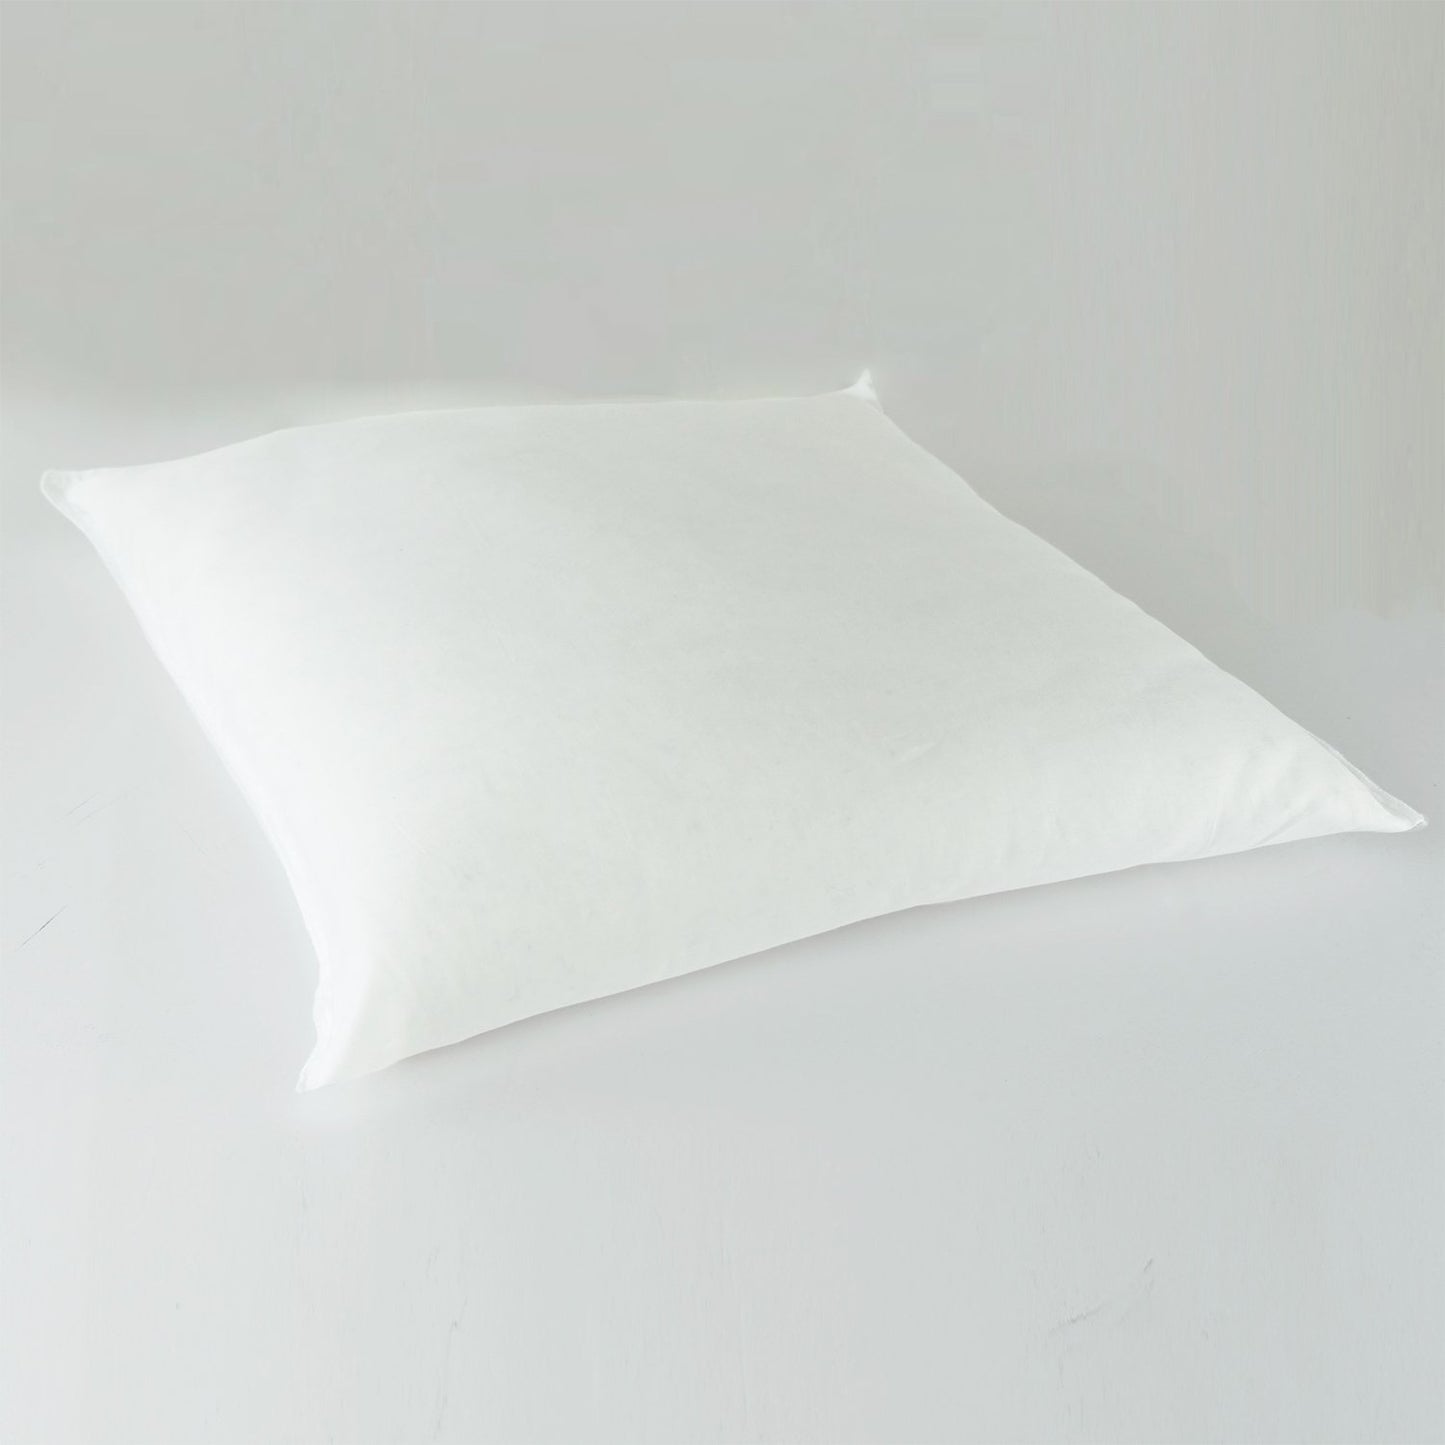 J-Life Tombo Navy Zabuton Floor Pillow_Pillows & Shams_Zabuton Floor Pillows_100% Cotton_Reversible_Handmade